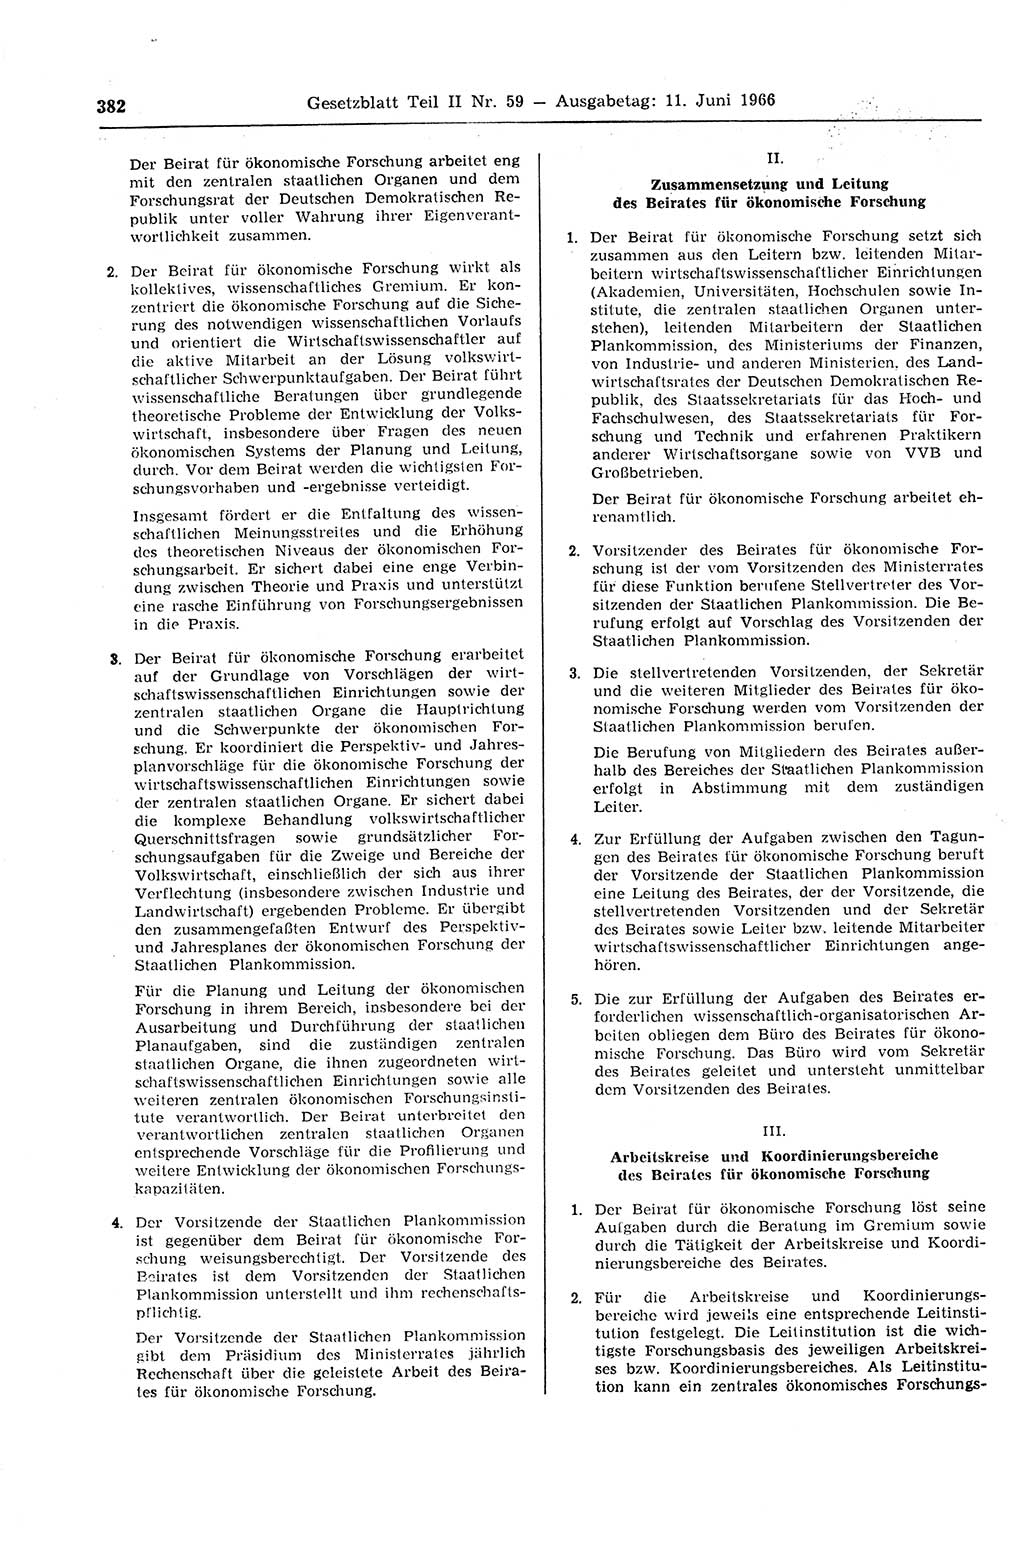 Gesetzblatt (GBl.) der Deutschen Demokratischen Republik (DDR) Teil ⅠⅠ 1966, Seite 382 (GBl. DDR ⅠⅠ 1966, S. 382)